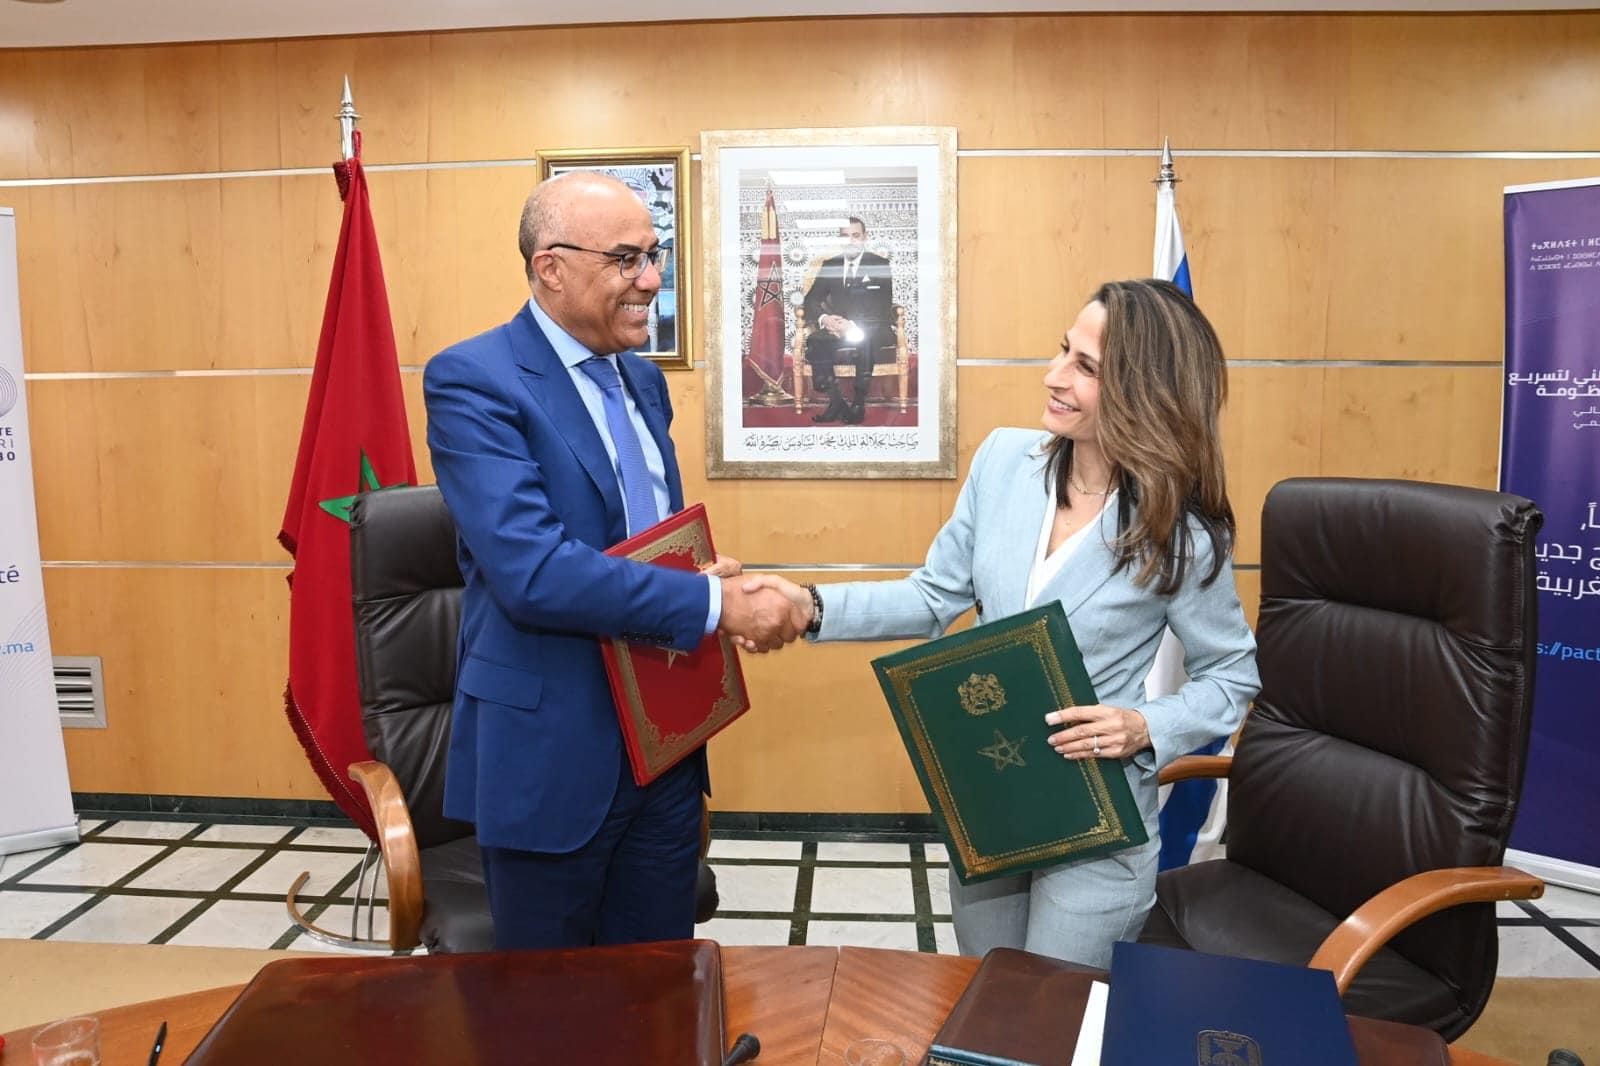 Signature d’un Mémorandum d'Entente entre le Ministère de l'Enseignement Supérieur, de la Recherche Scientifique et de l’Innovation du Royaume du Maroc et le Ministère de l'Innovation, des Sciences et de la Technologie de l’Etat d’Israël